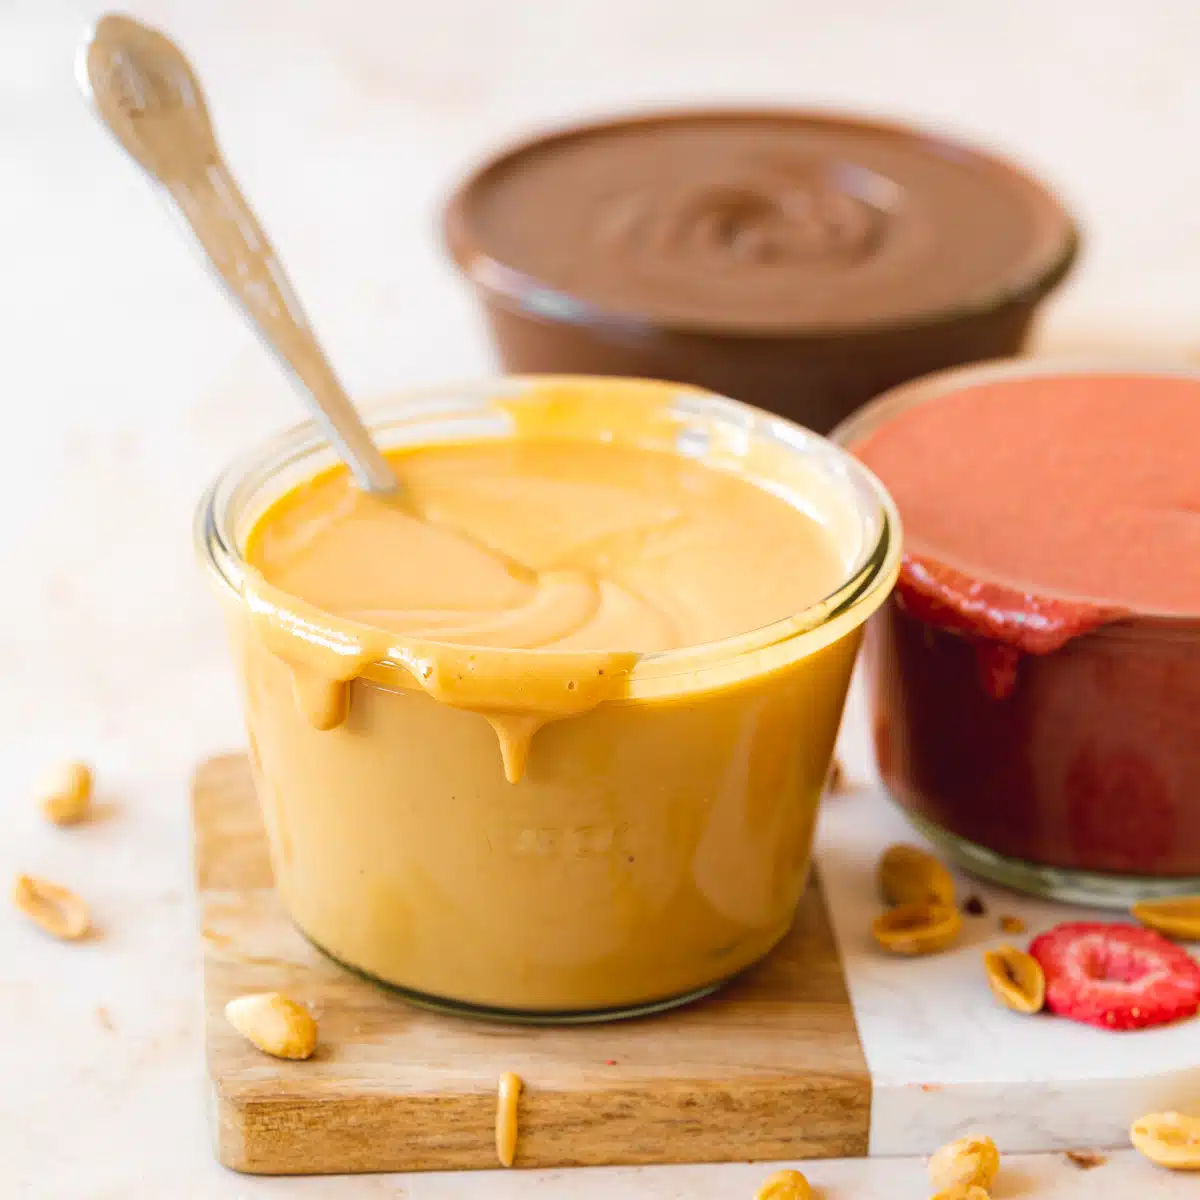 Gourmet Homemade Peanut Butter (3 Ways!)